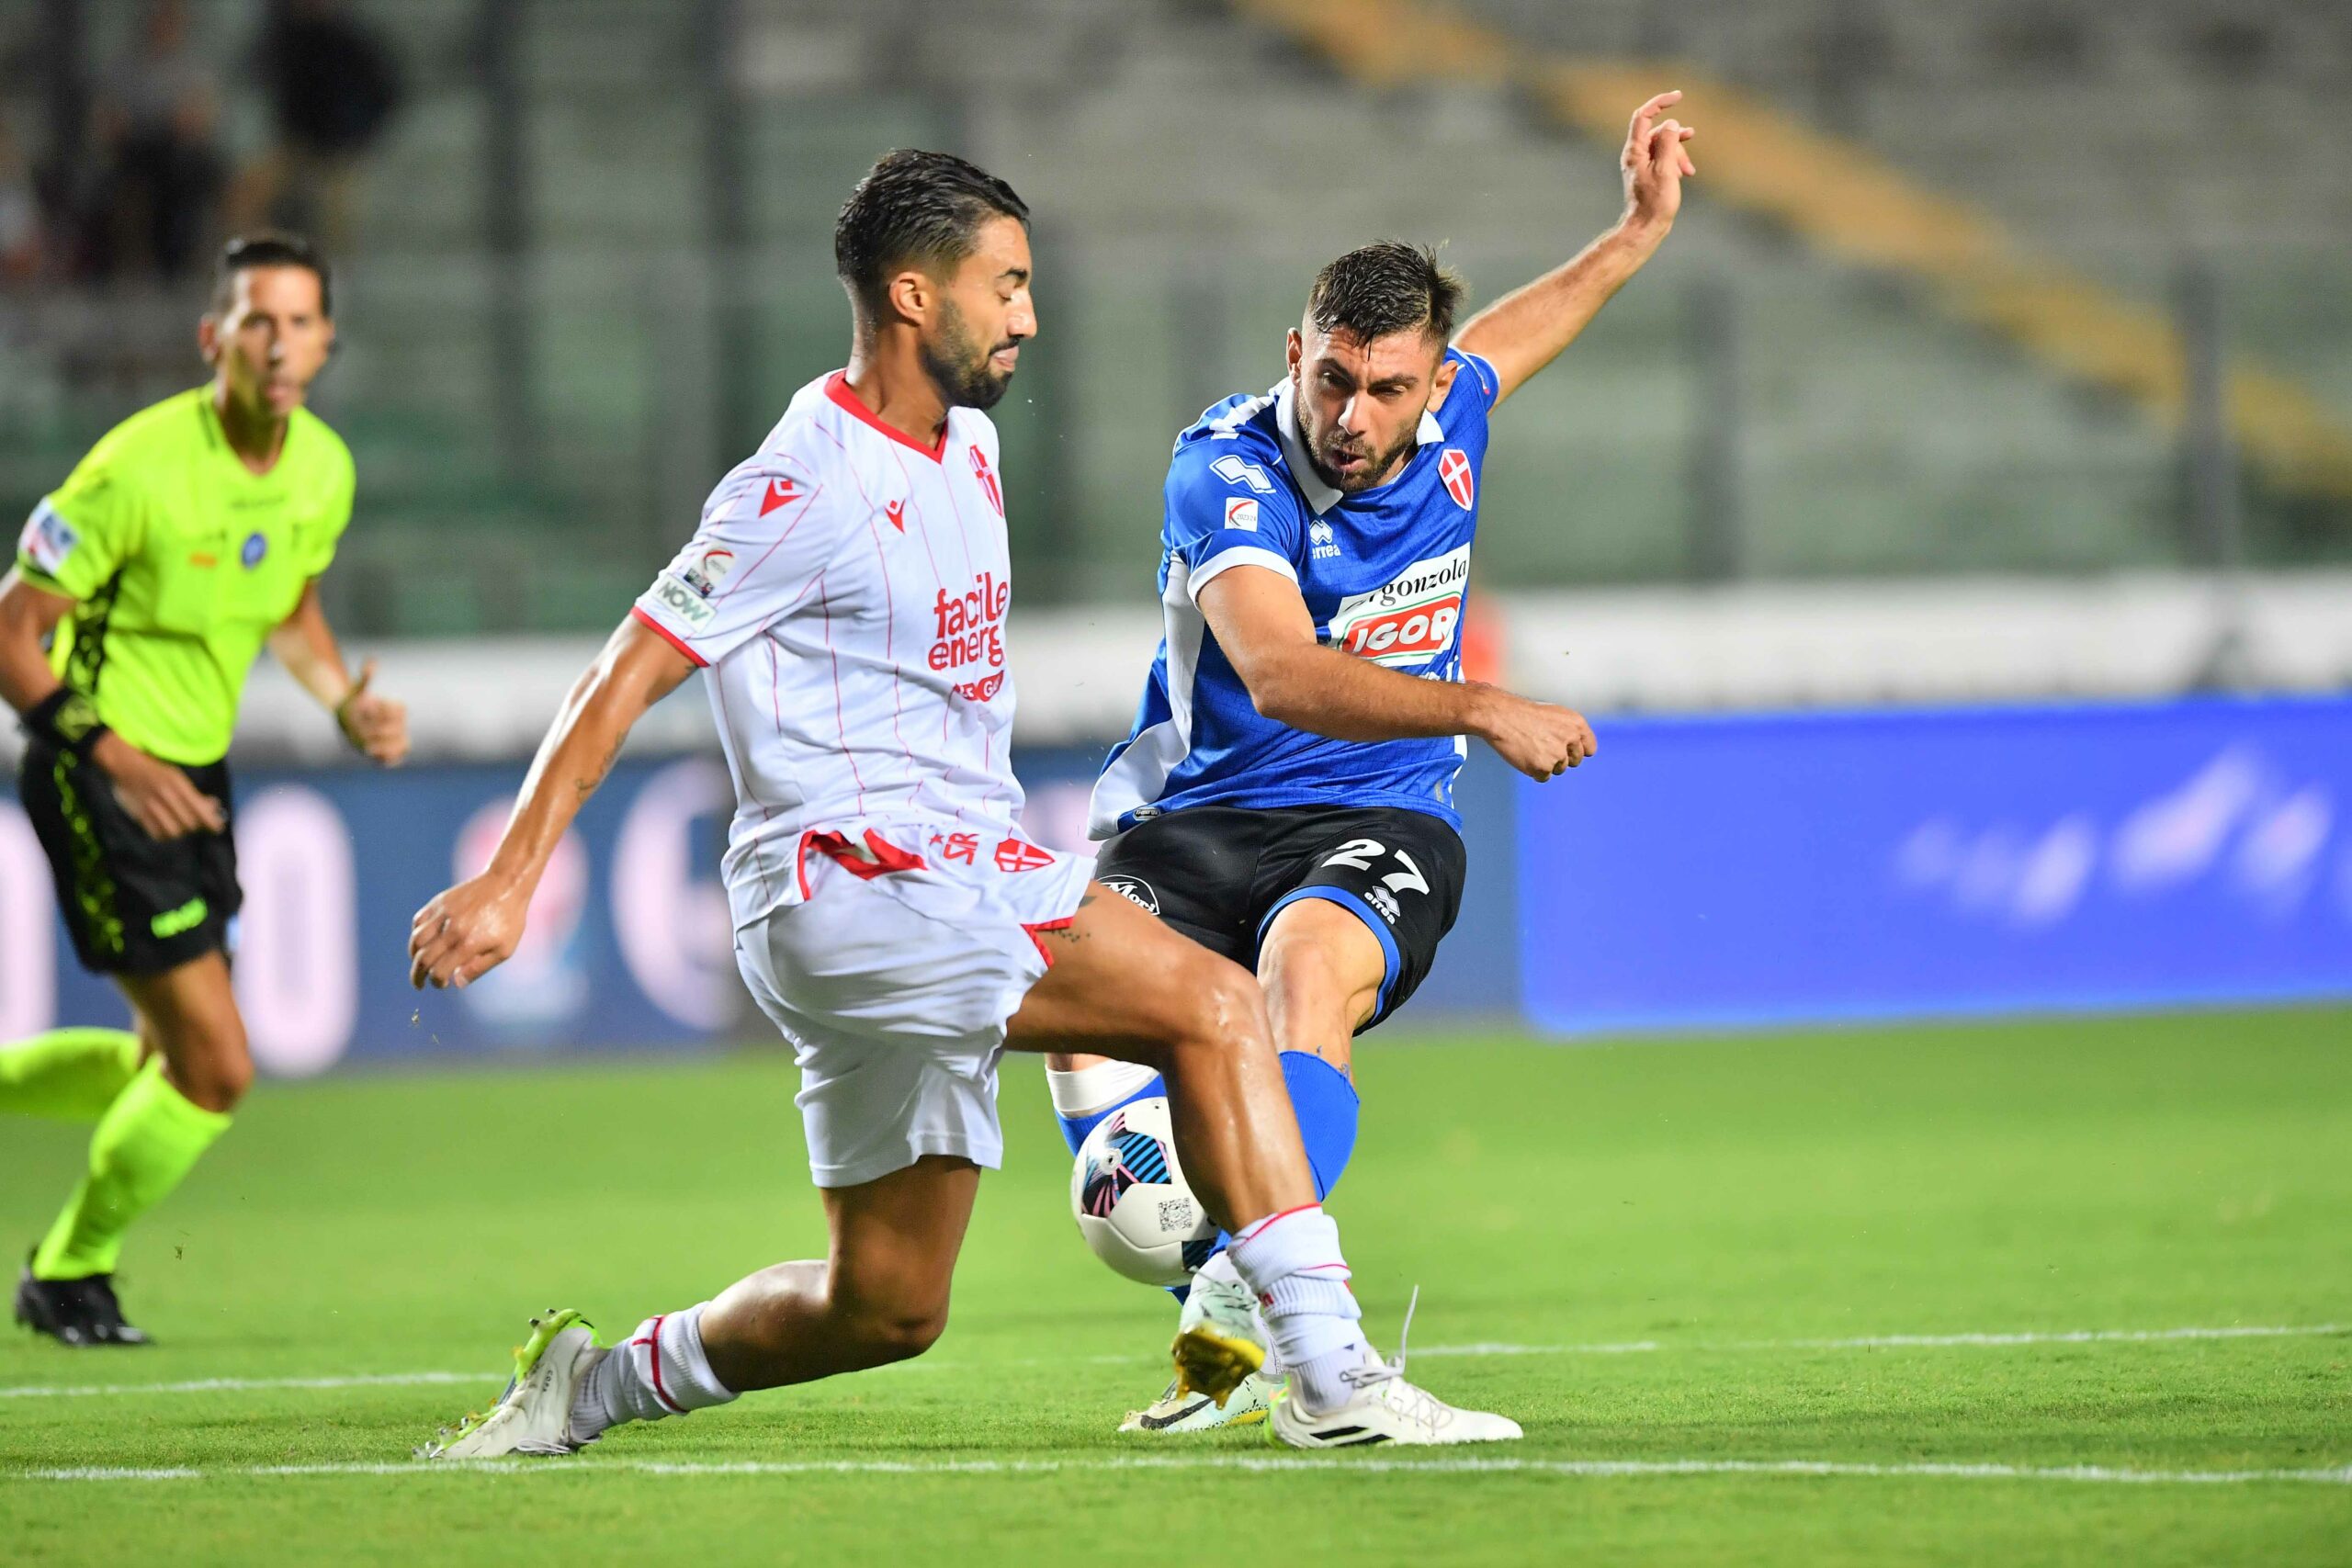 Read more about the article Padova-Novara 2-0 | Tabellino del match